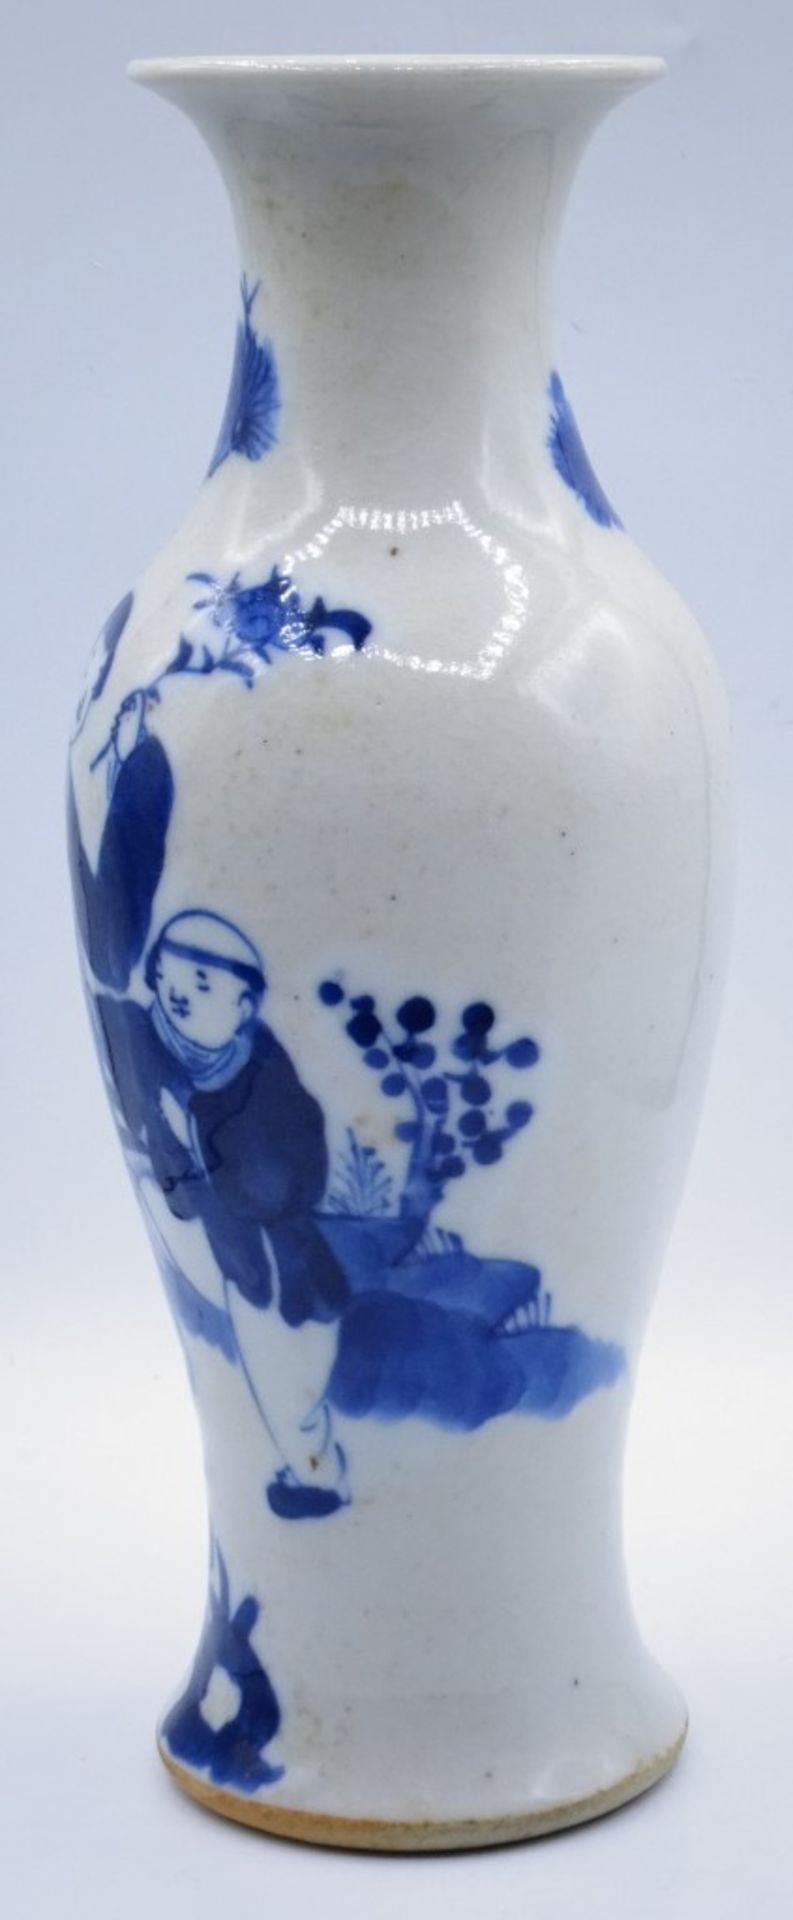 Vase China, 19.Jahrhundert?,blaumalerei,im Boden beschriftet,H-24,5cm - Bild 3 aus 5